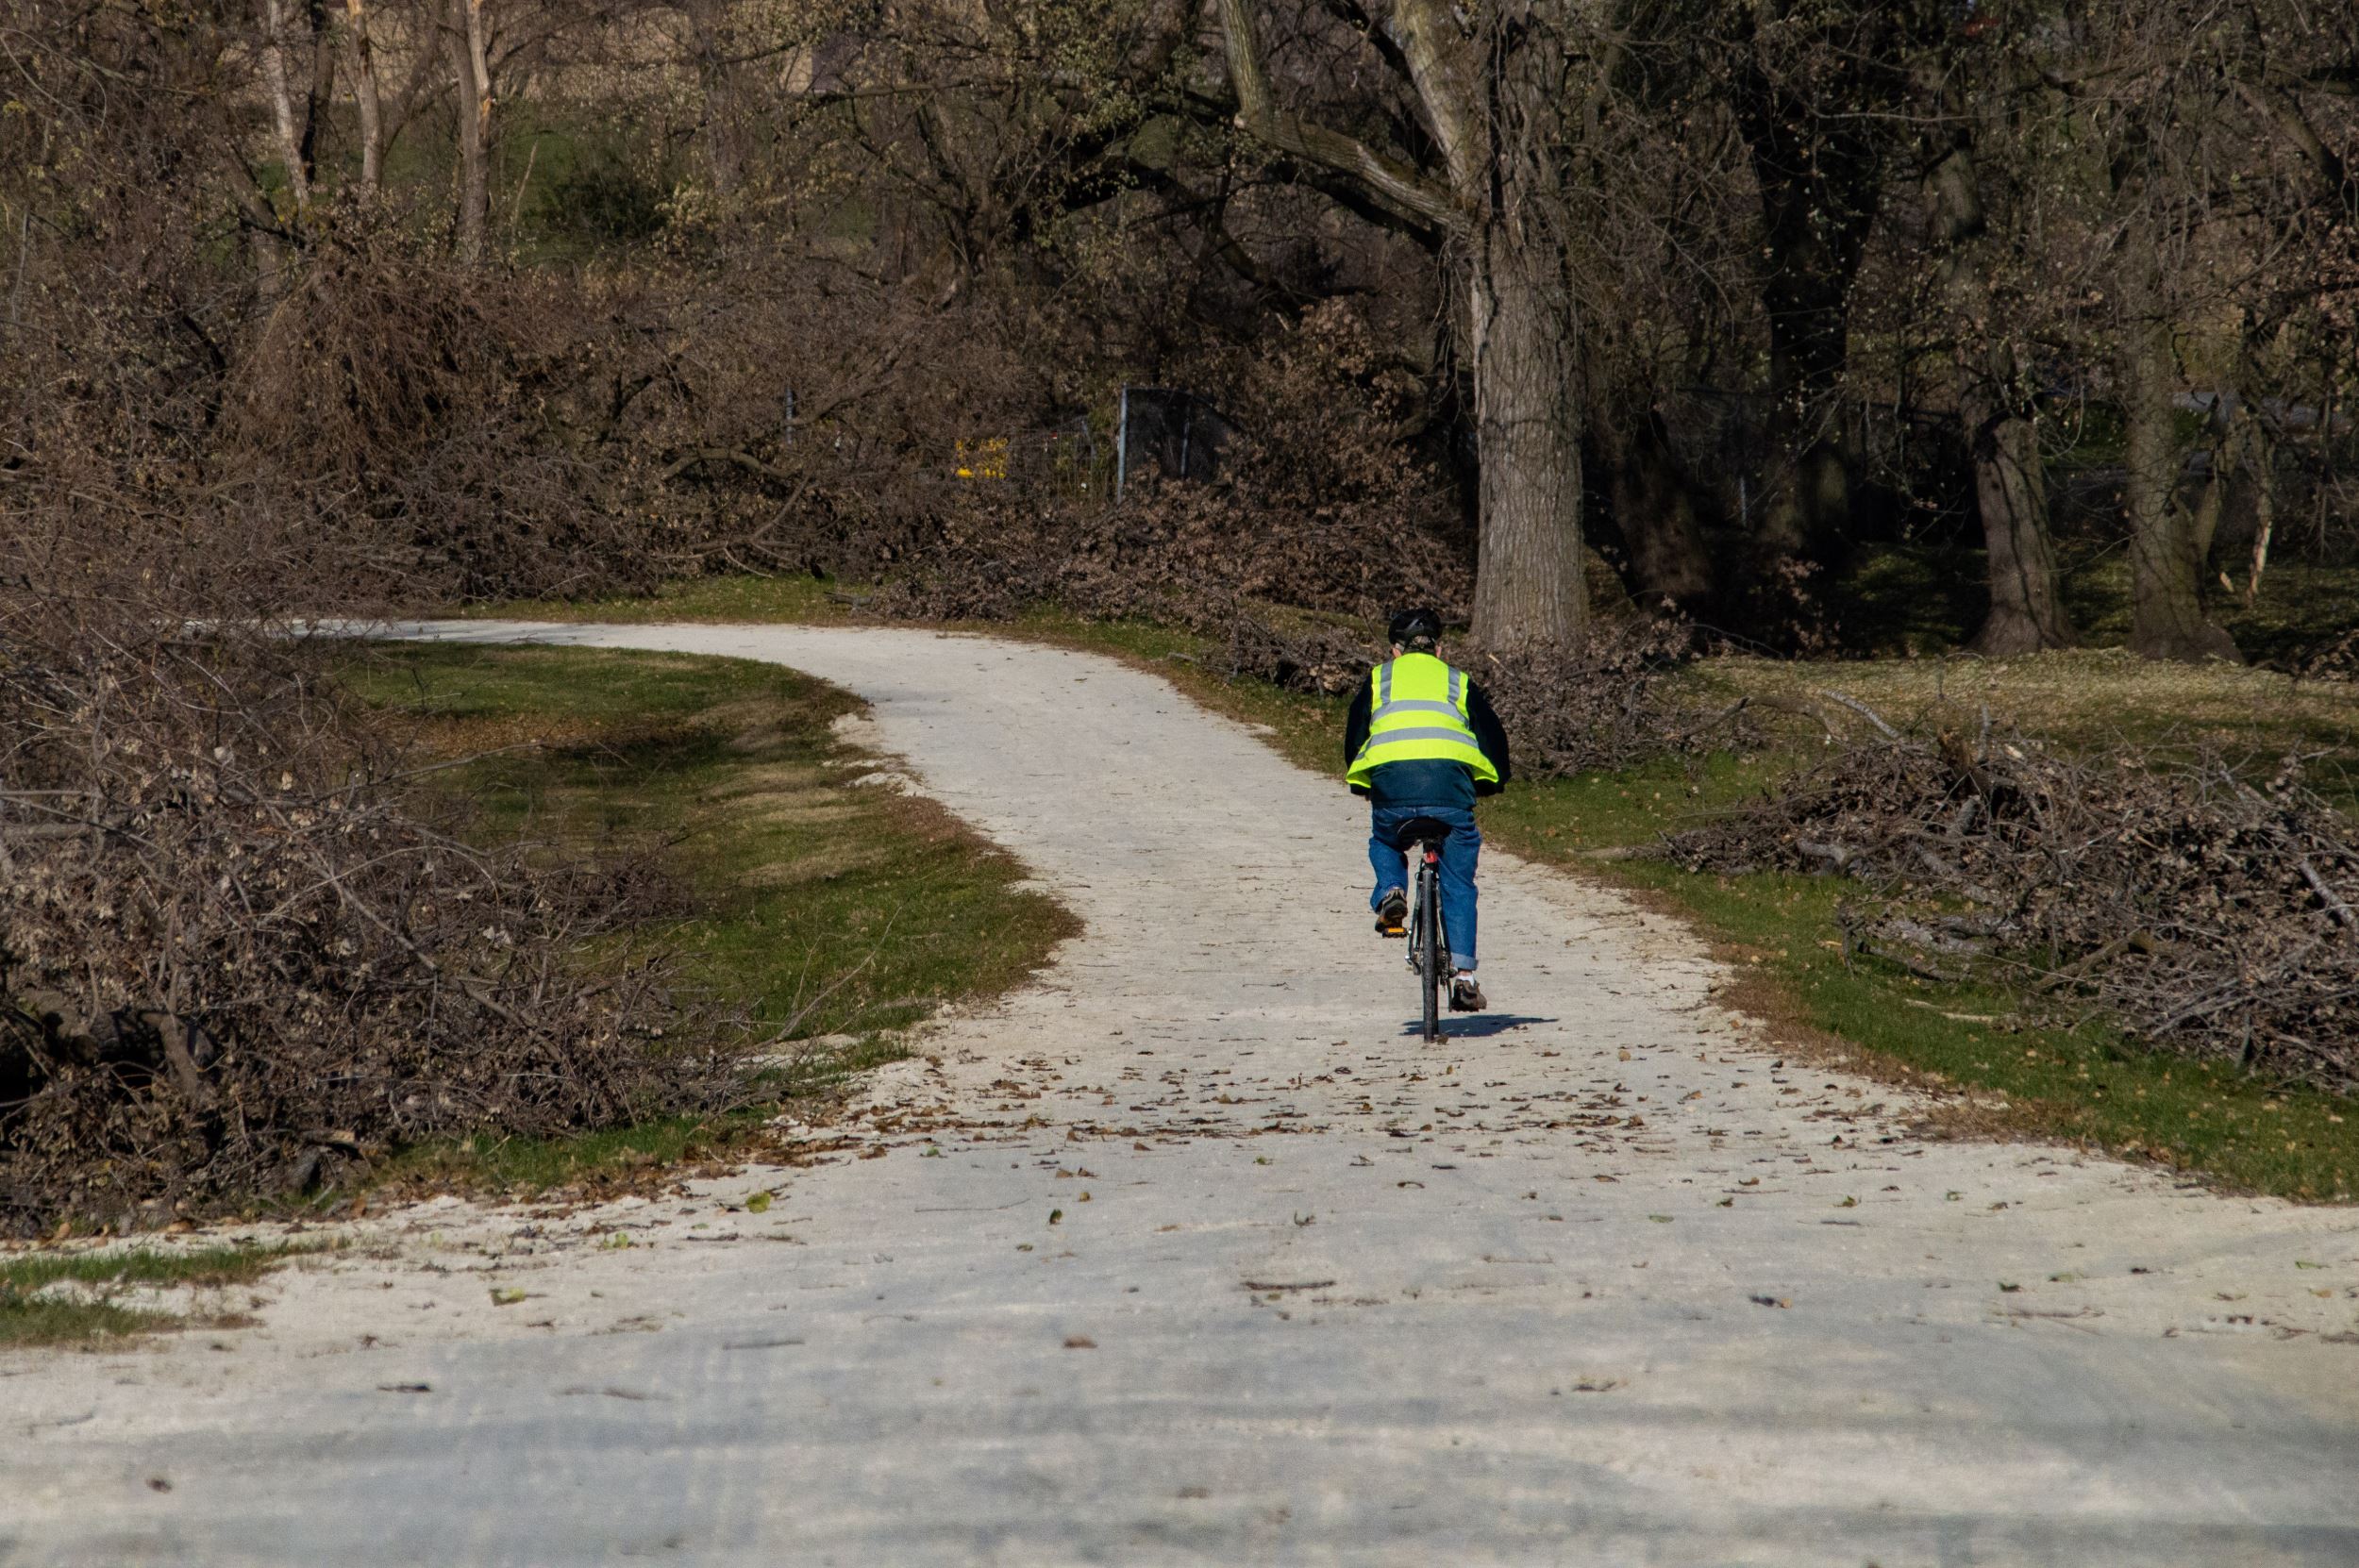 Man in sanitation jacket rides a bike down a path